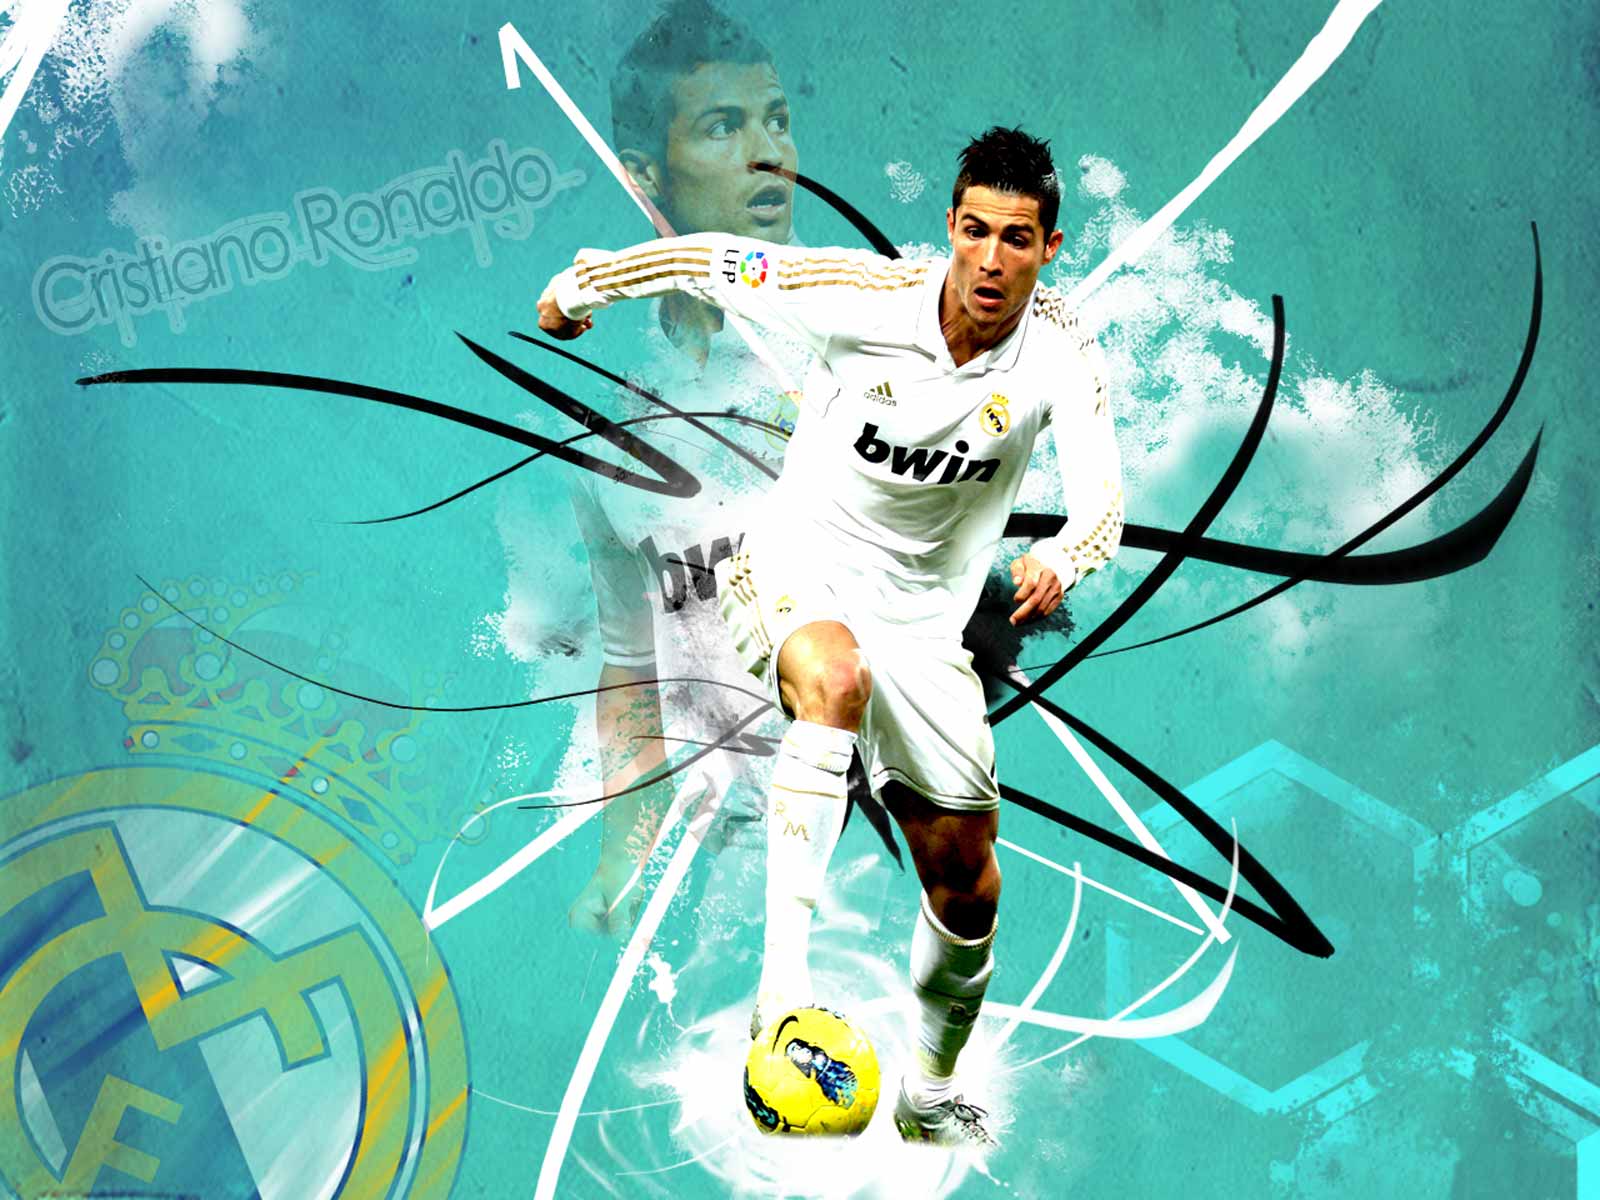 http://4.bp.blogspot.com/-QsOdwogtO6Y/UVW1SKe_S6I/AAAAAAAAA2Q/_vstNraCLvc/s1600/Cristiano_Ronaldo_Real_Madrid.jpg